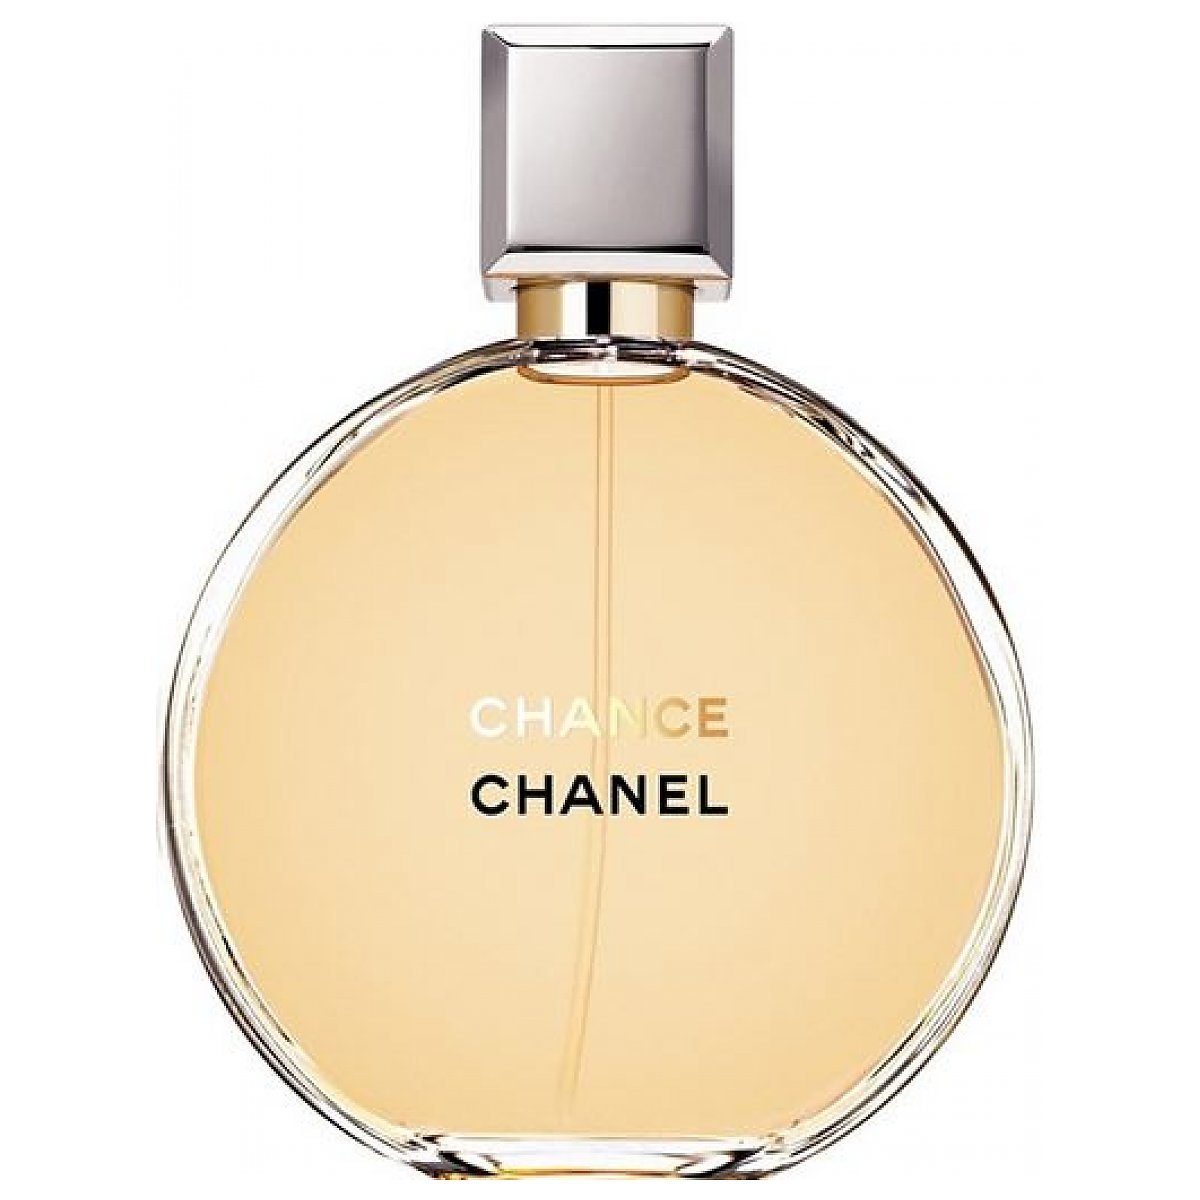 Chanel perfumy i kosmetyki  notinopl